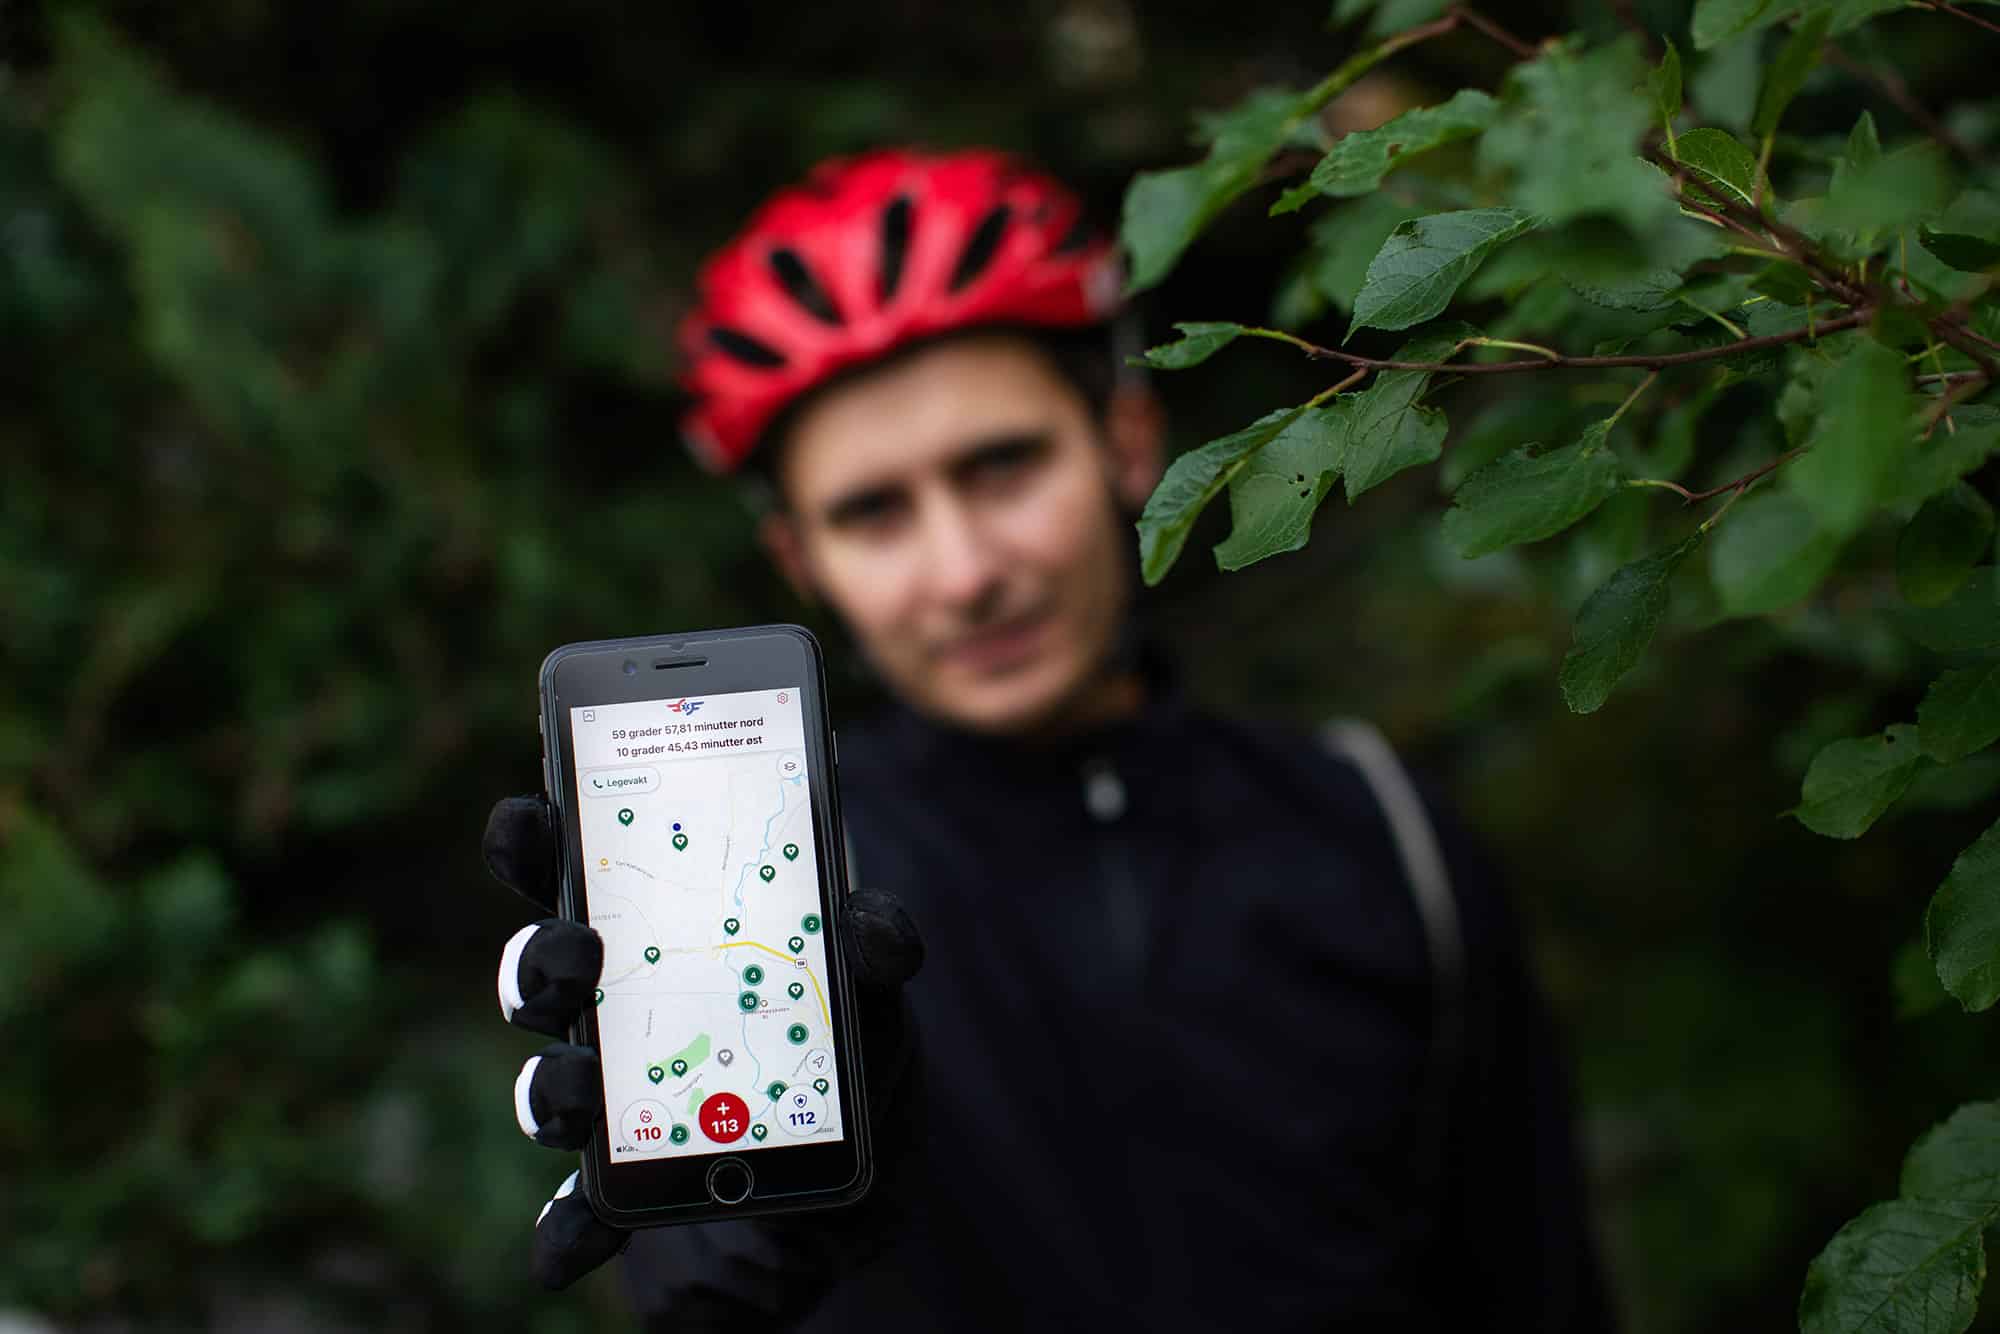 Mann med sykkelhjelm holder frem mobiltelefon med 113-appen aktiv